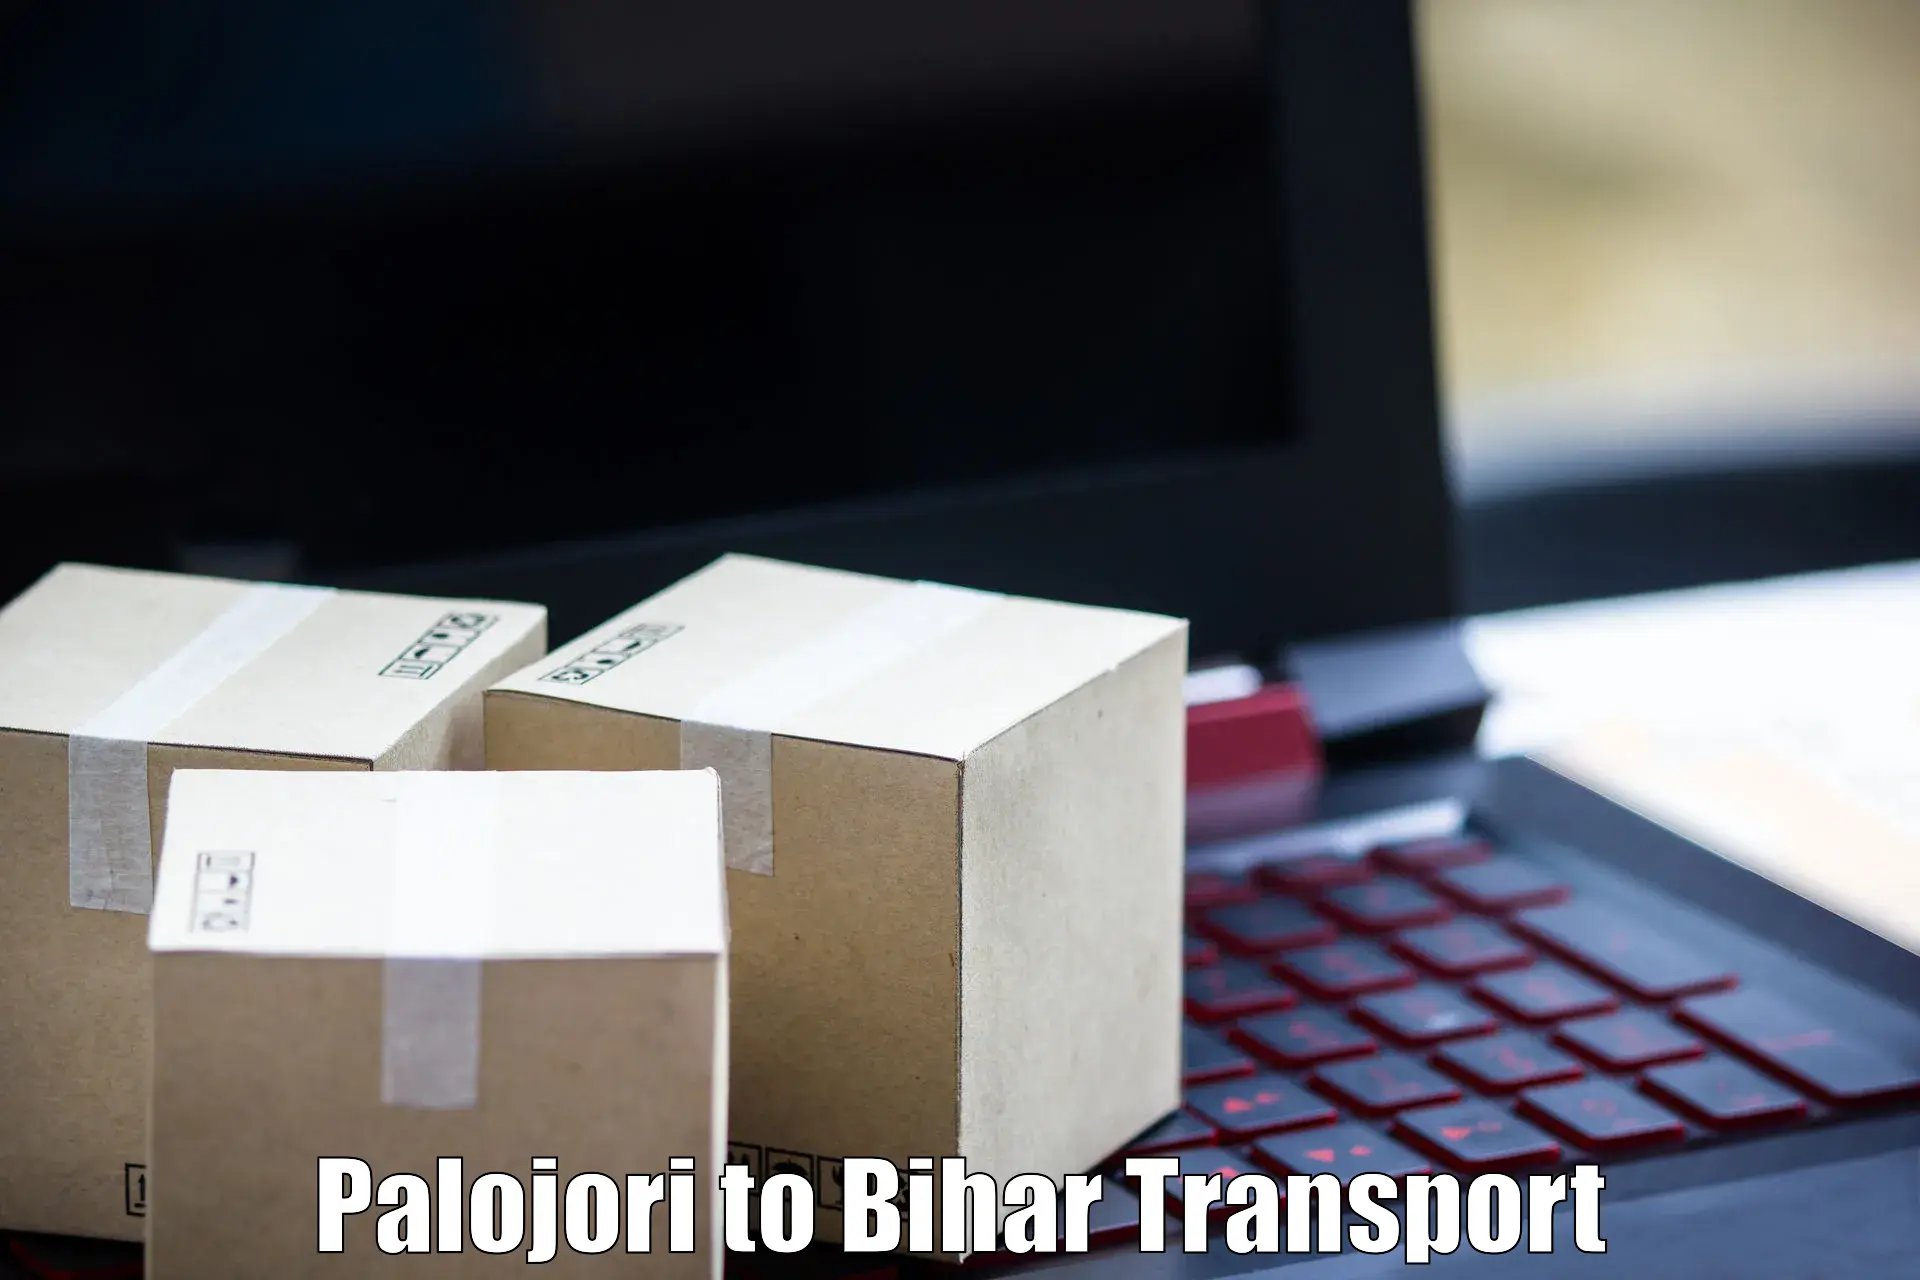 Online transport service Palojori to Sangrampur